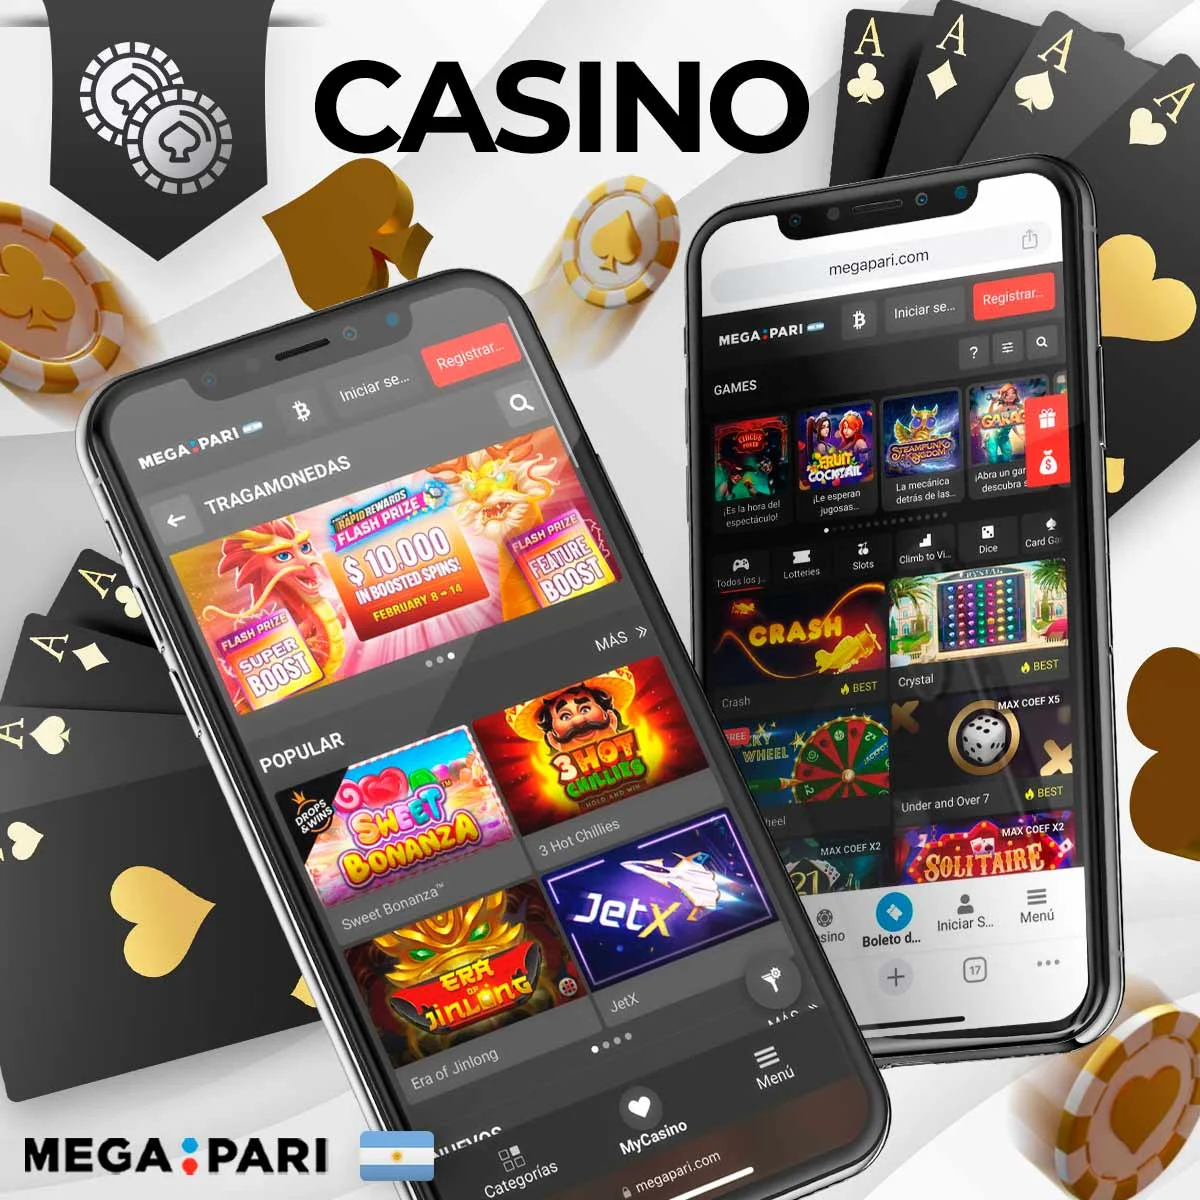 Megapari Casino ofrece una amplia gama de juegos diferentes, tragaperras, ruleta